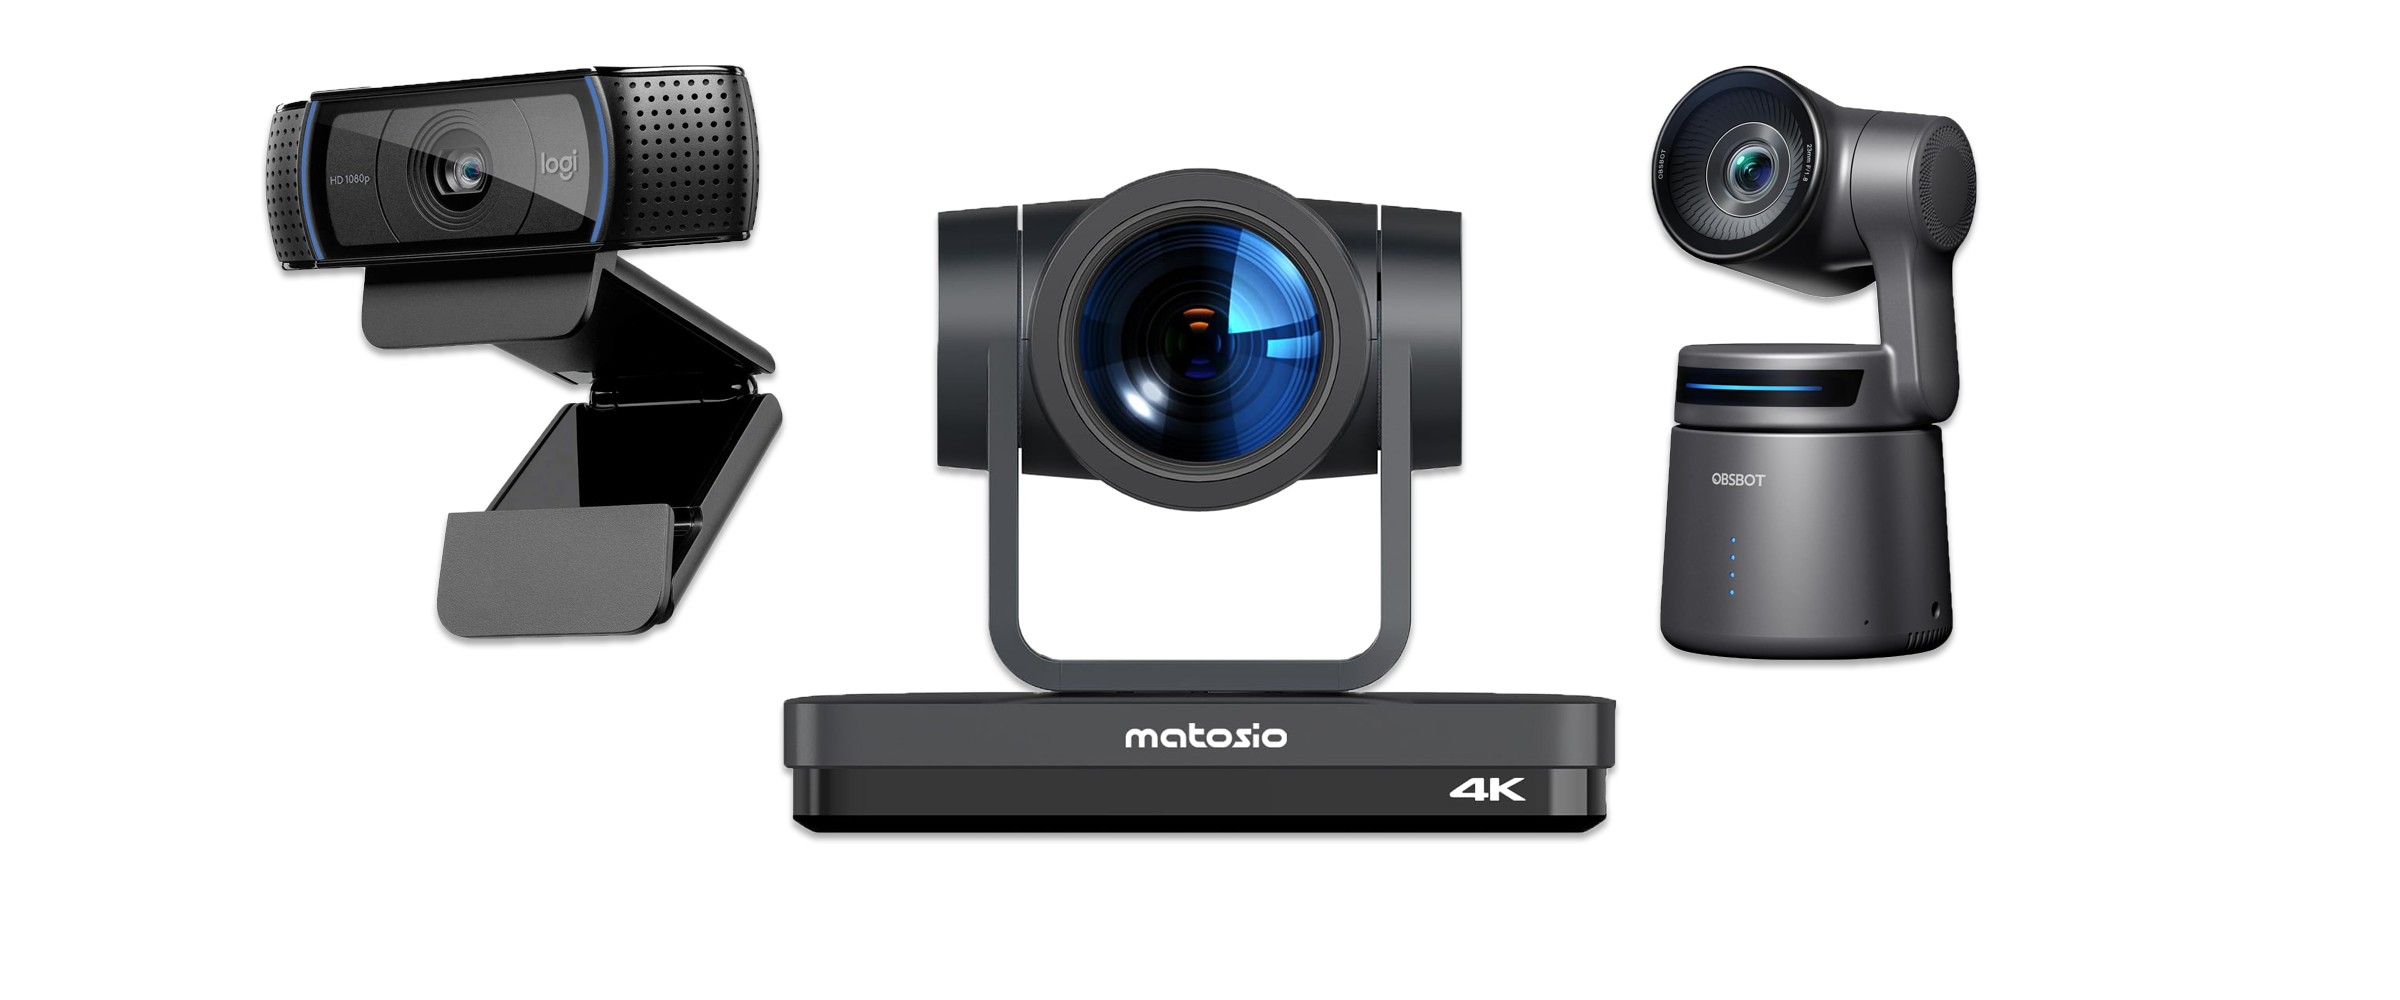 Drei verschiedene Webcams vor weißem Hintergrund. Zu sehen sind eine Office-Version von Logitech, eine teure Konferenz-Kamera von Matoiso und eine Webcam To Go von Obsbot